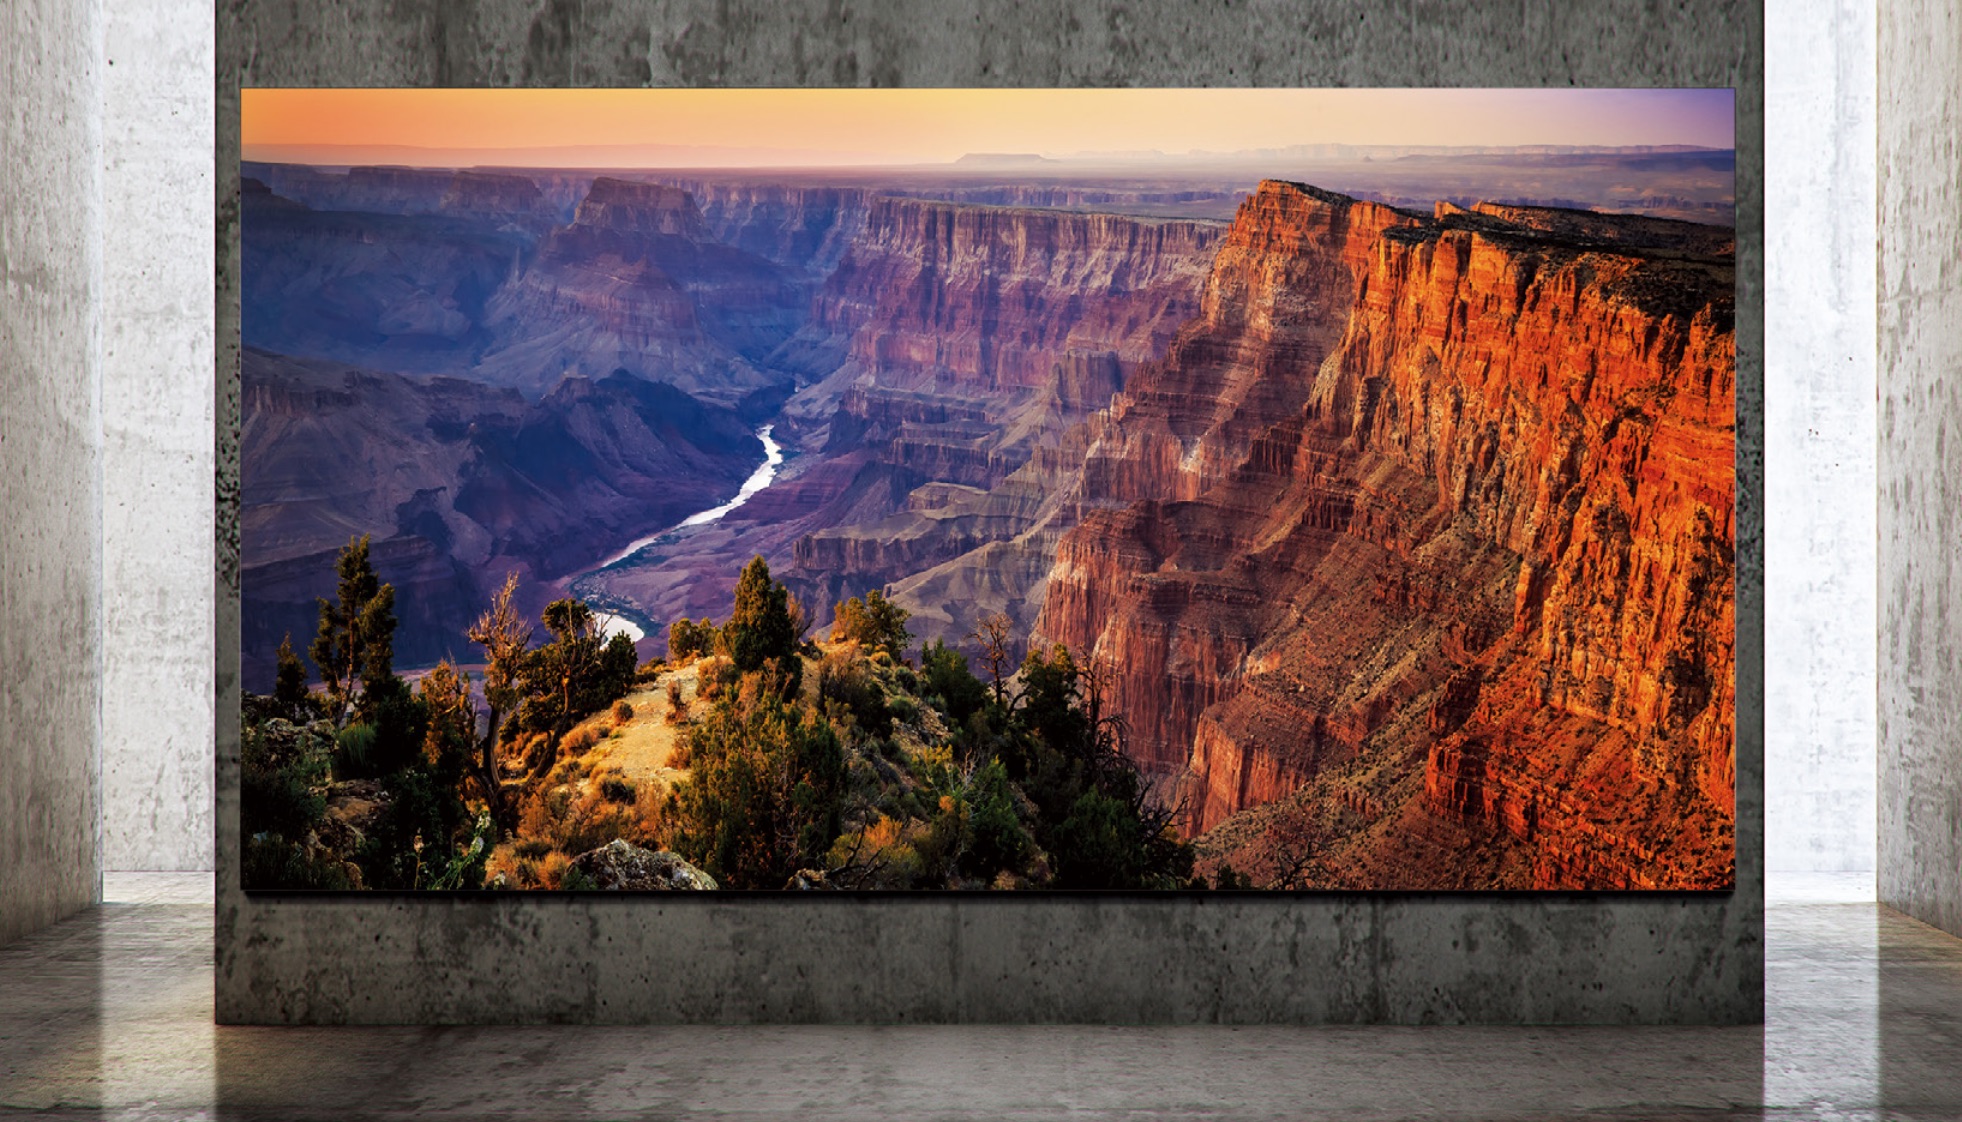 Samsung começa a vender TVs Micro LED com resolução 8K e até 292 polegadas